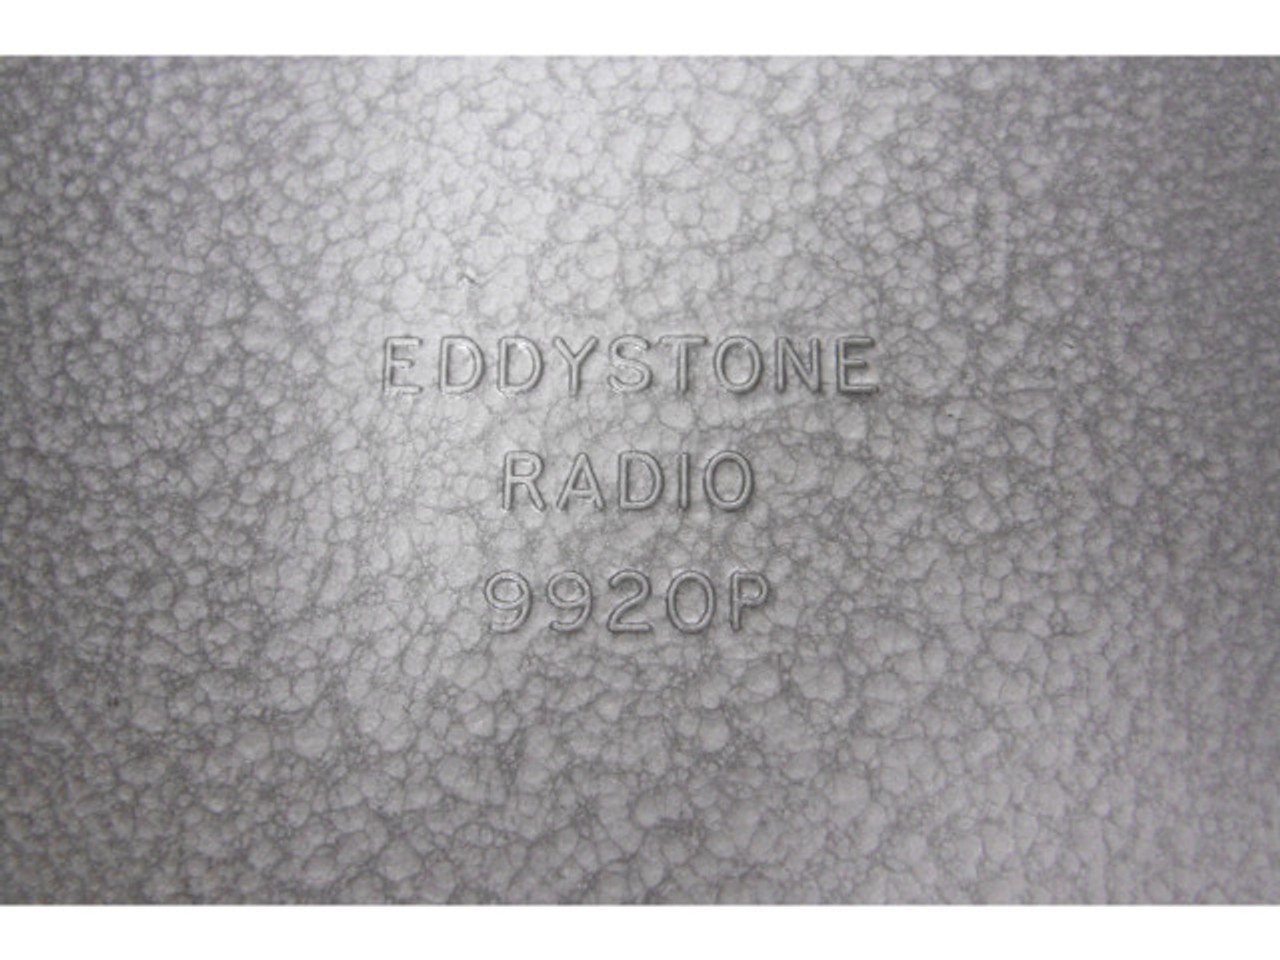 EddyStone Radio 9920P Diecast Box & Lid 220mm X 120mm X 80mm ! NEW !